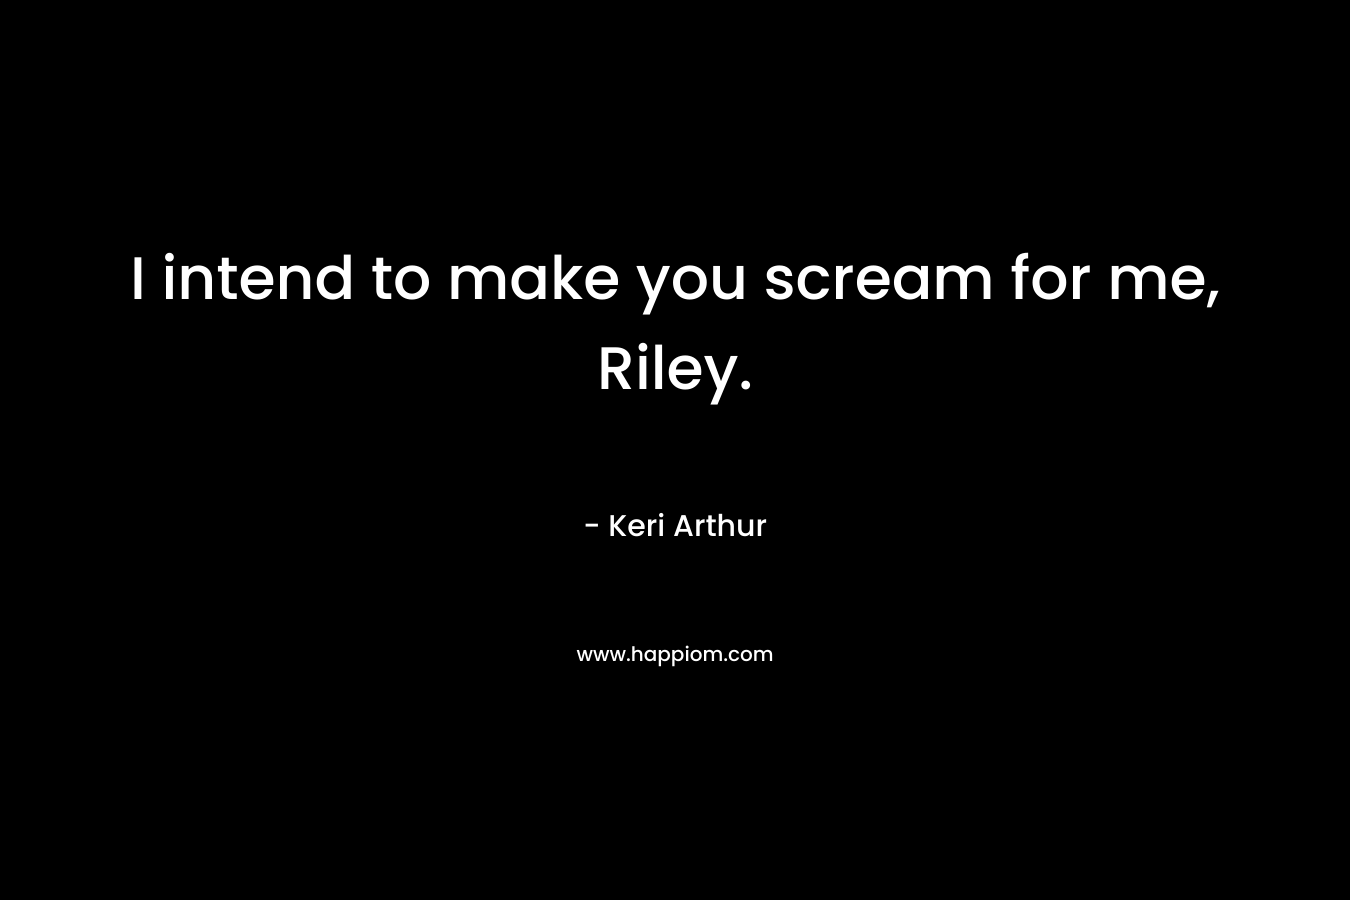 I intend to make you scream for me, Riley. – Keri Arthur